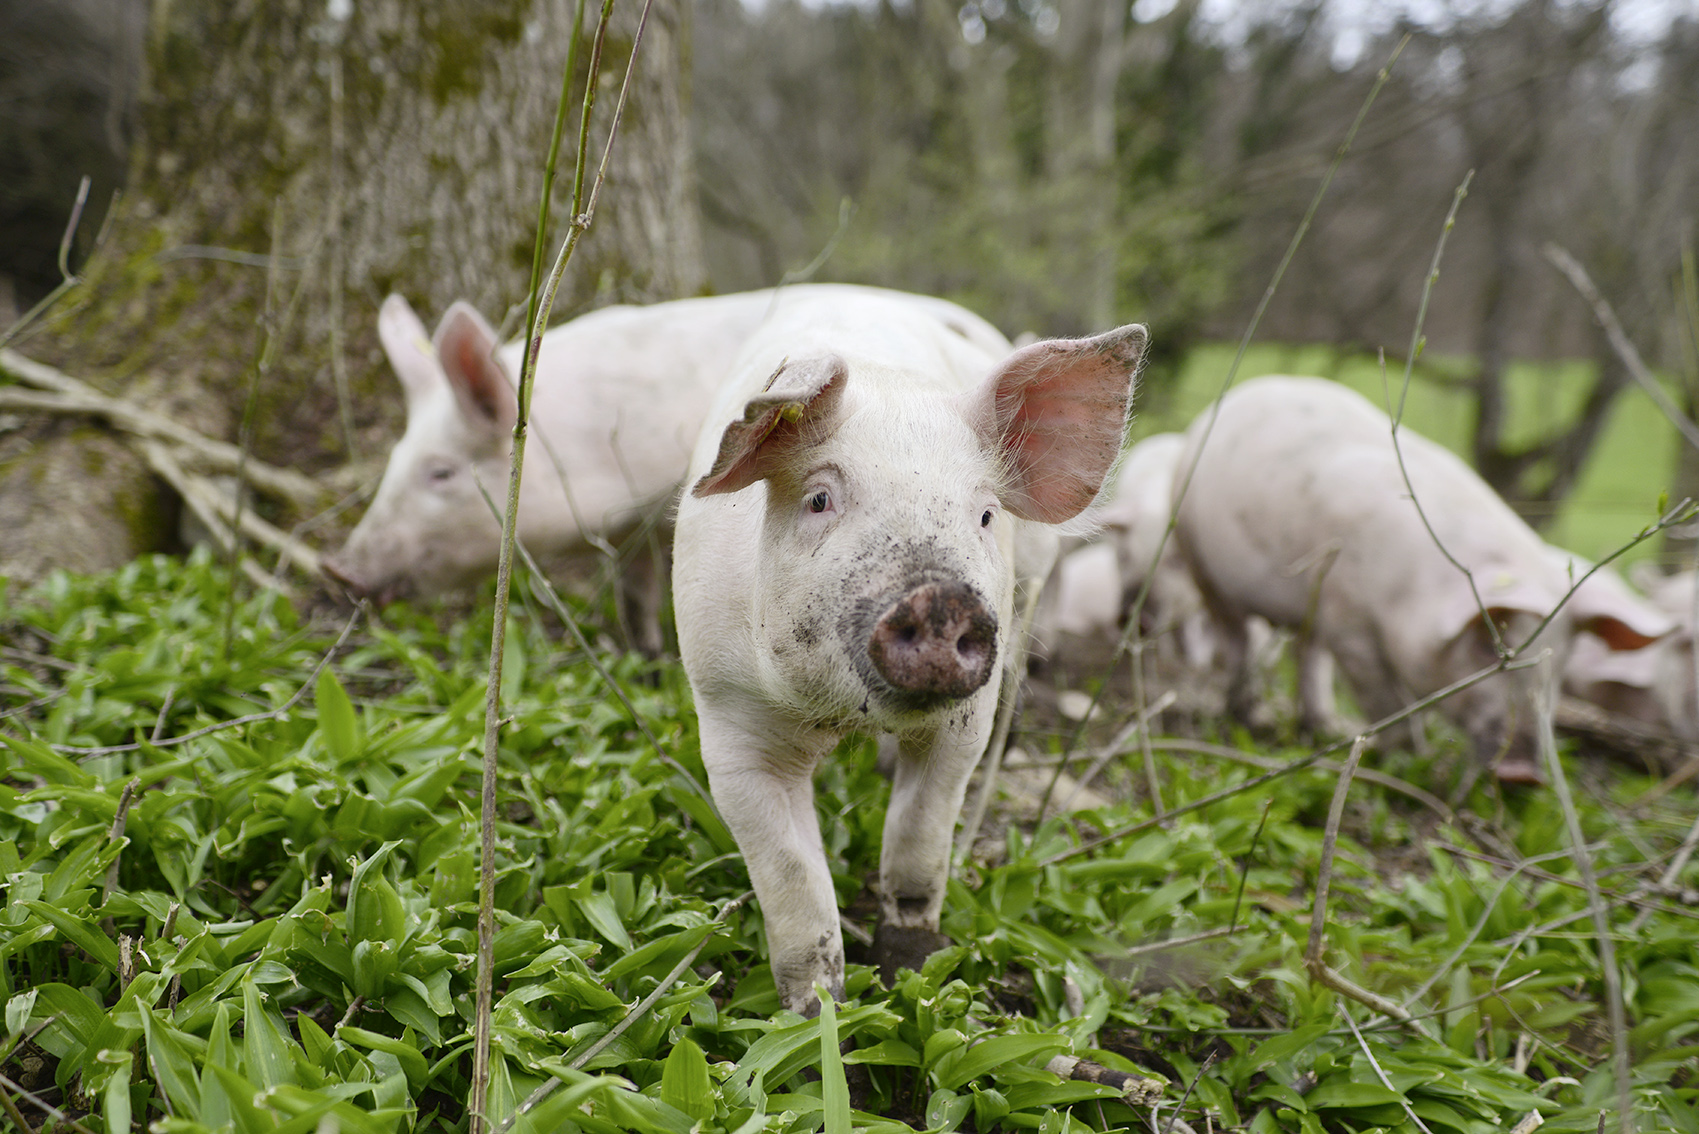 Hotellerie Gastronomie Zeitung: Glückliche Schweine liefern zartes Fleisch